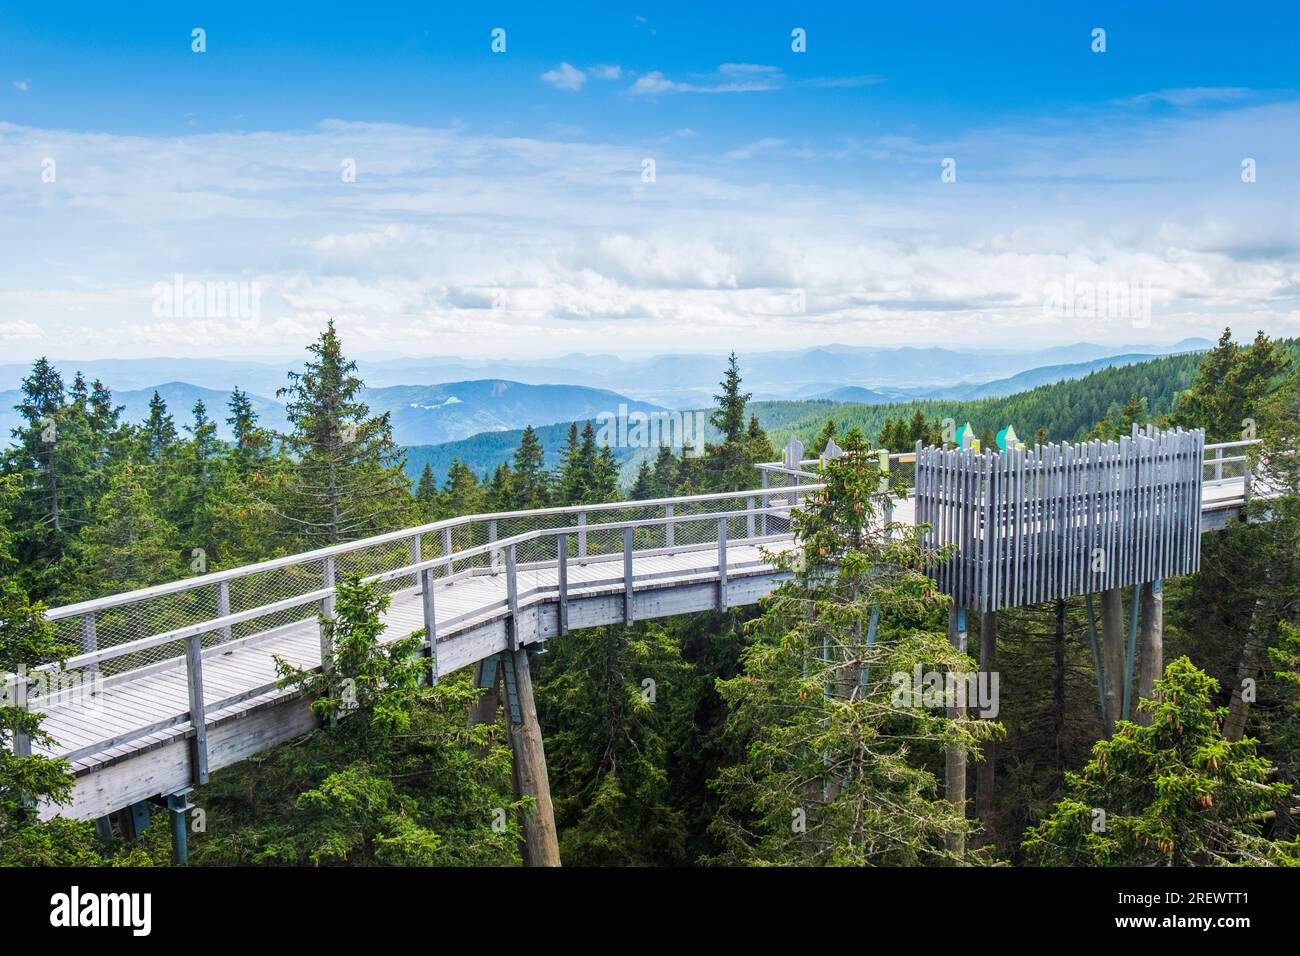 Sentier de randonnée de la canopée forestière au-dessus de la cime des arbres, aventure en plein air sur Rogla, Slovénie Banque D'Images